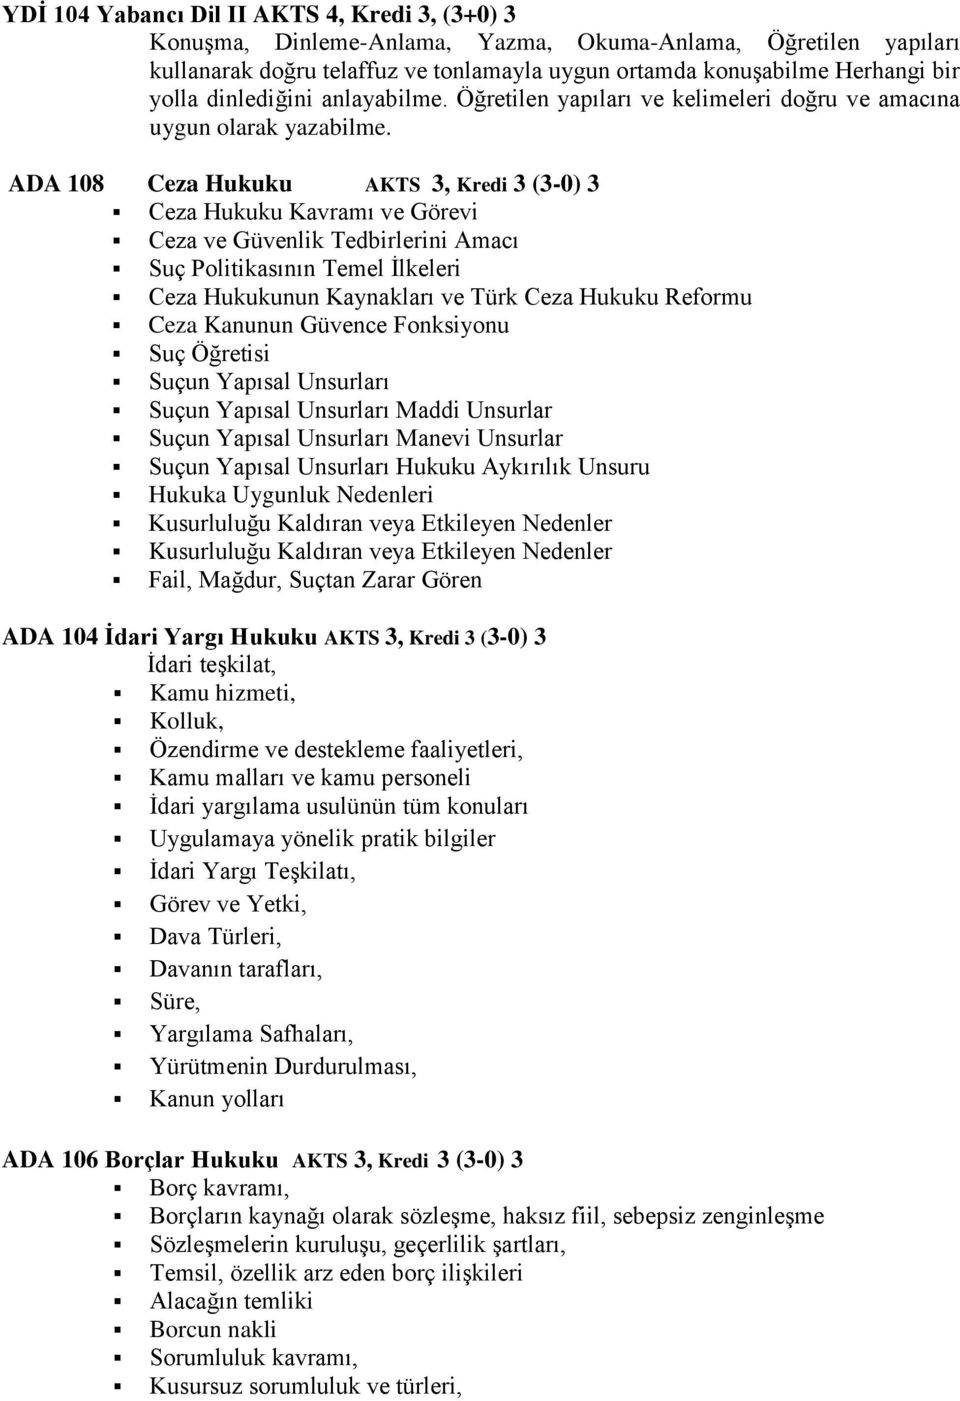 ADA 108 Ceza Hukuku AKTS 3, Kredi 3 (3-0) 3 Ceza Hukuku Kavramı ve Görevi Ceza ve Güvenlik Tedbirlerini Amacı Suç Politikasının Temel İlkeleri Ceza Hukukunun Kaynakları ve Türk Ceza Hukuku Reformu